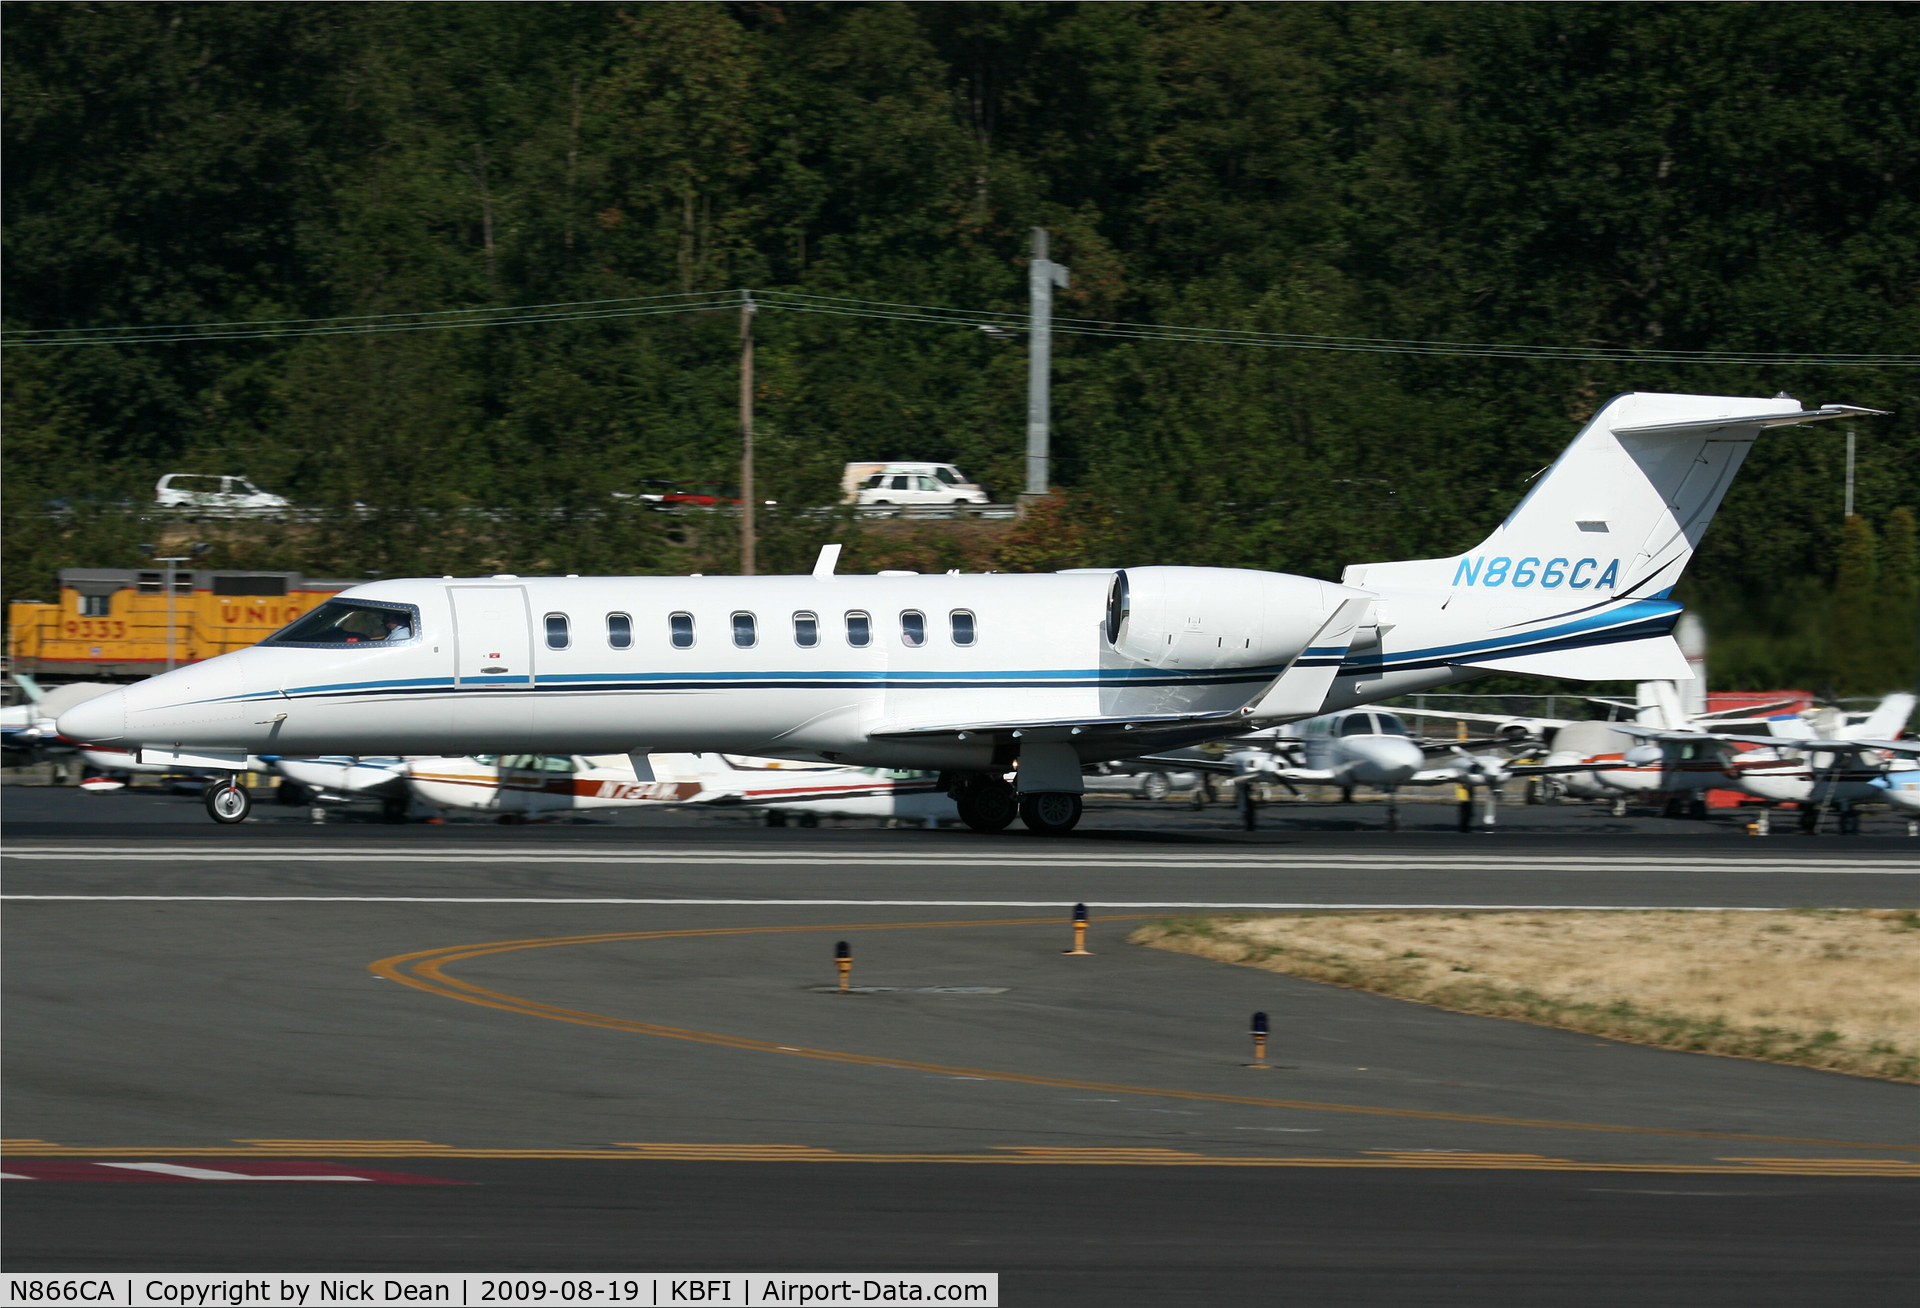 N866CA, 2001 Learjet Inc 45 C/N 184, KBFI